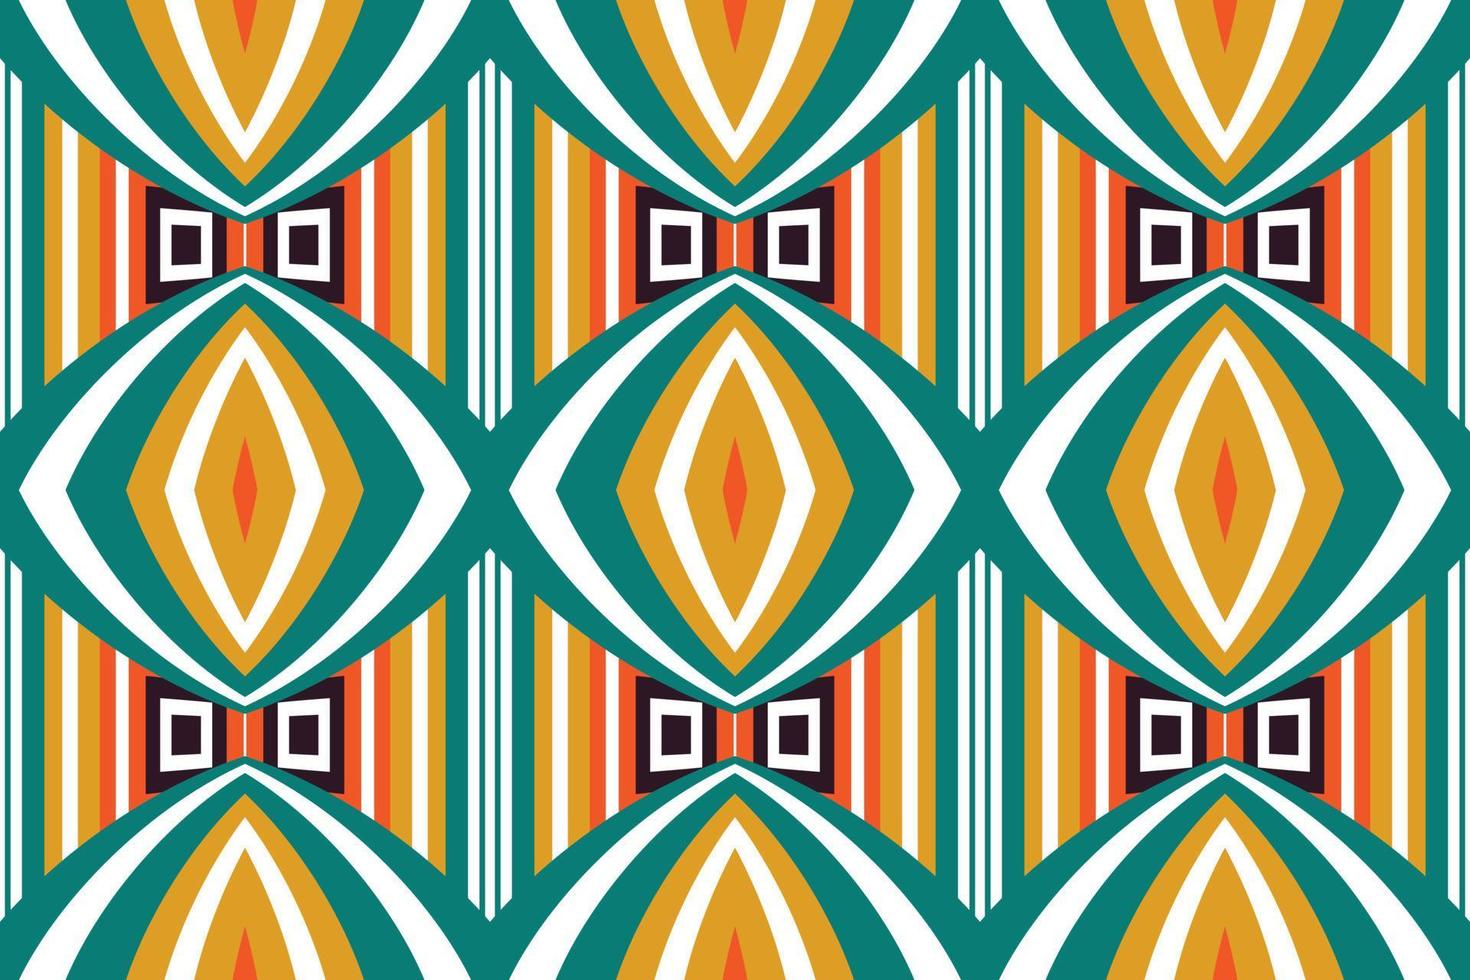 Afrikaanse kente kleding stof vector naadloos patroon kente digitaal papier Afrikaanse kente kleding geweven kleding stof afdrukken